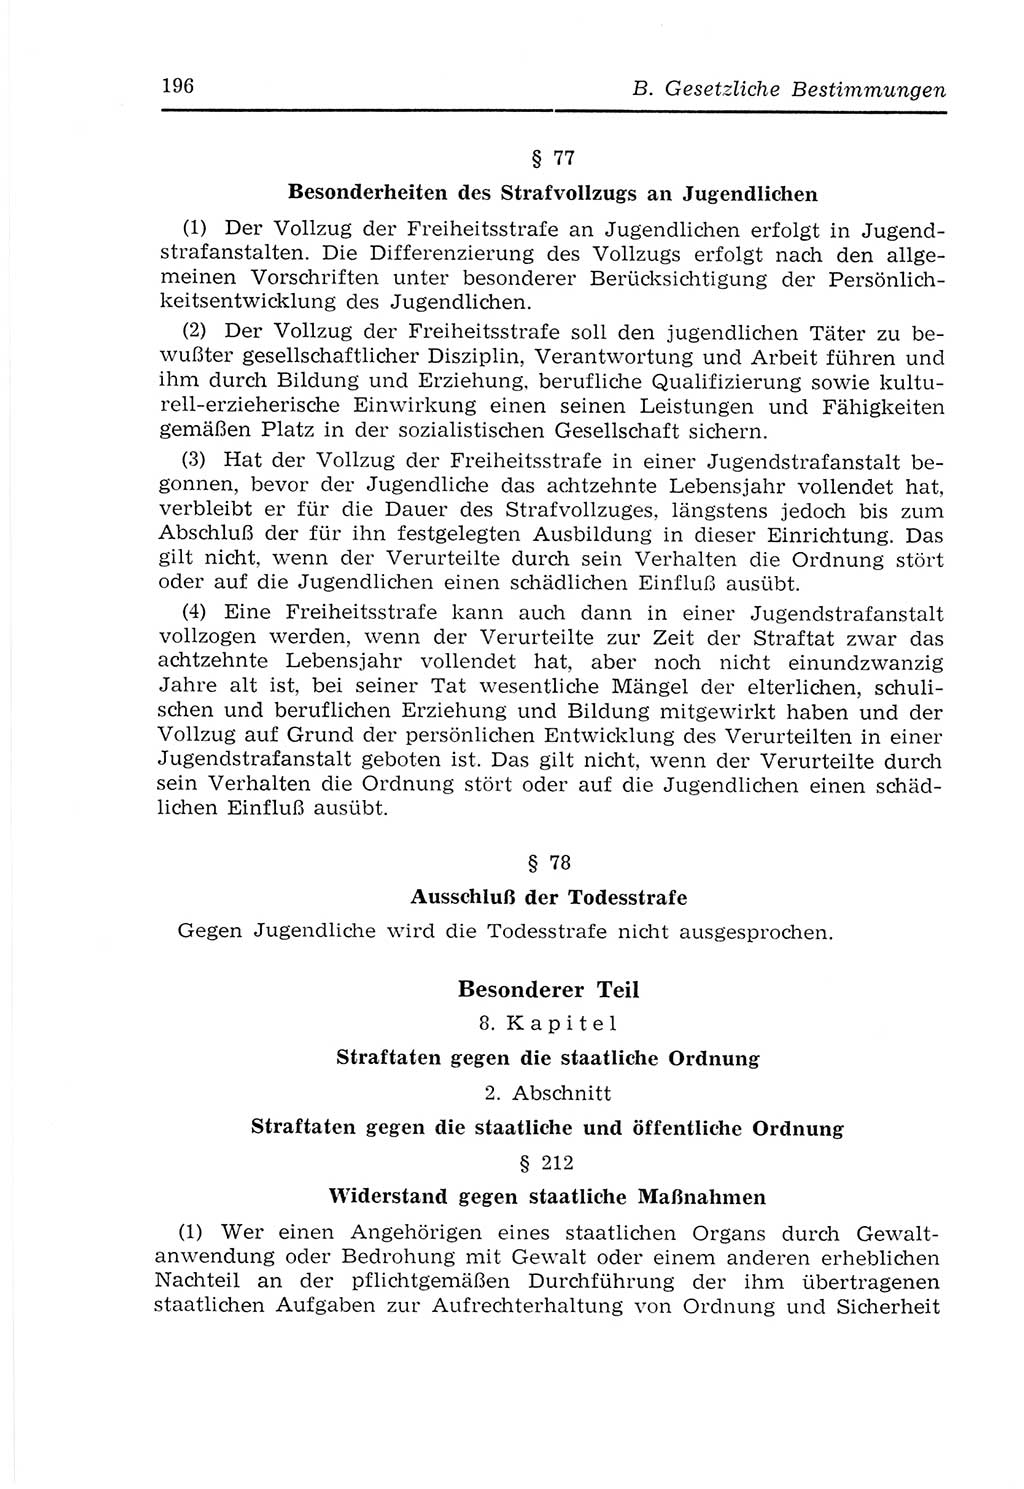 Strafvollzugs- und Wiedereingliederungsgesetz (SVWG) der Deutschen Demokratischen Republik (DDR) 1968, Seite 196 (SVWG DDR 1968, S. 196)